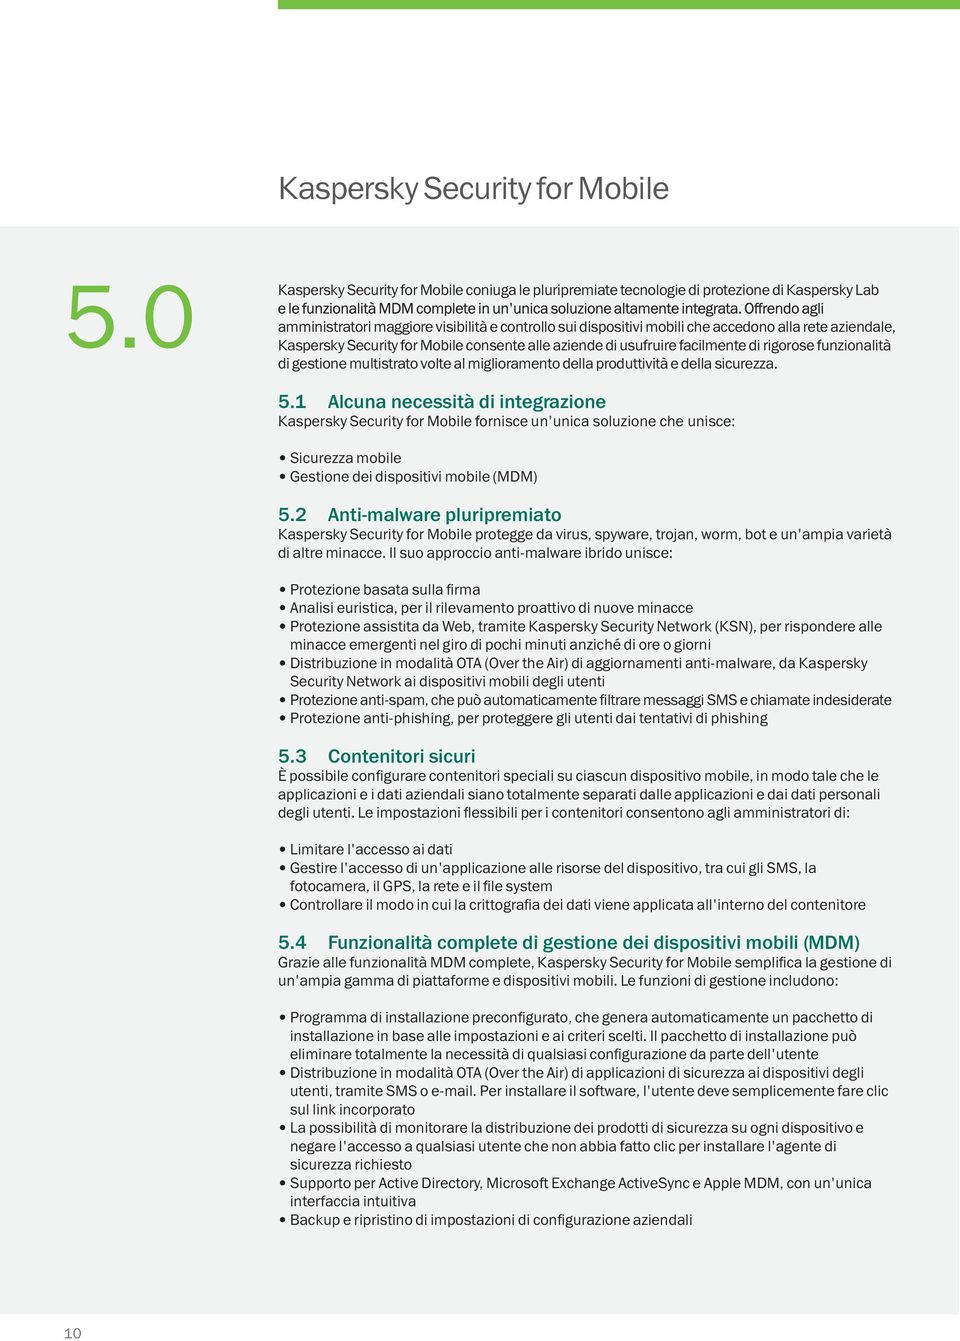 aziendale, Kaspersky Security for Mobile consente alle aziende di usufruire facilmente di rigorose funzionalità di gestione multistrato volte al miglioramento della produttività e della sicurezza. 5.